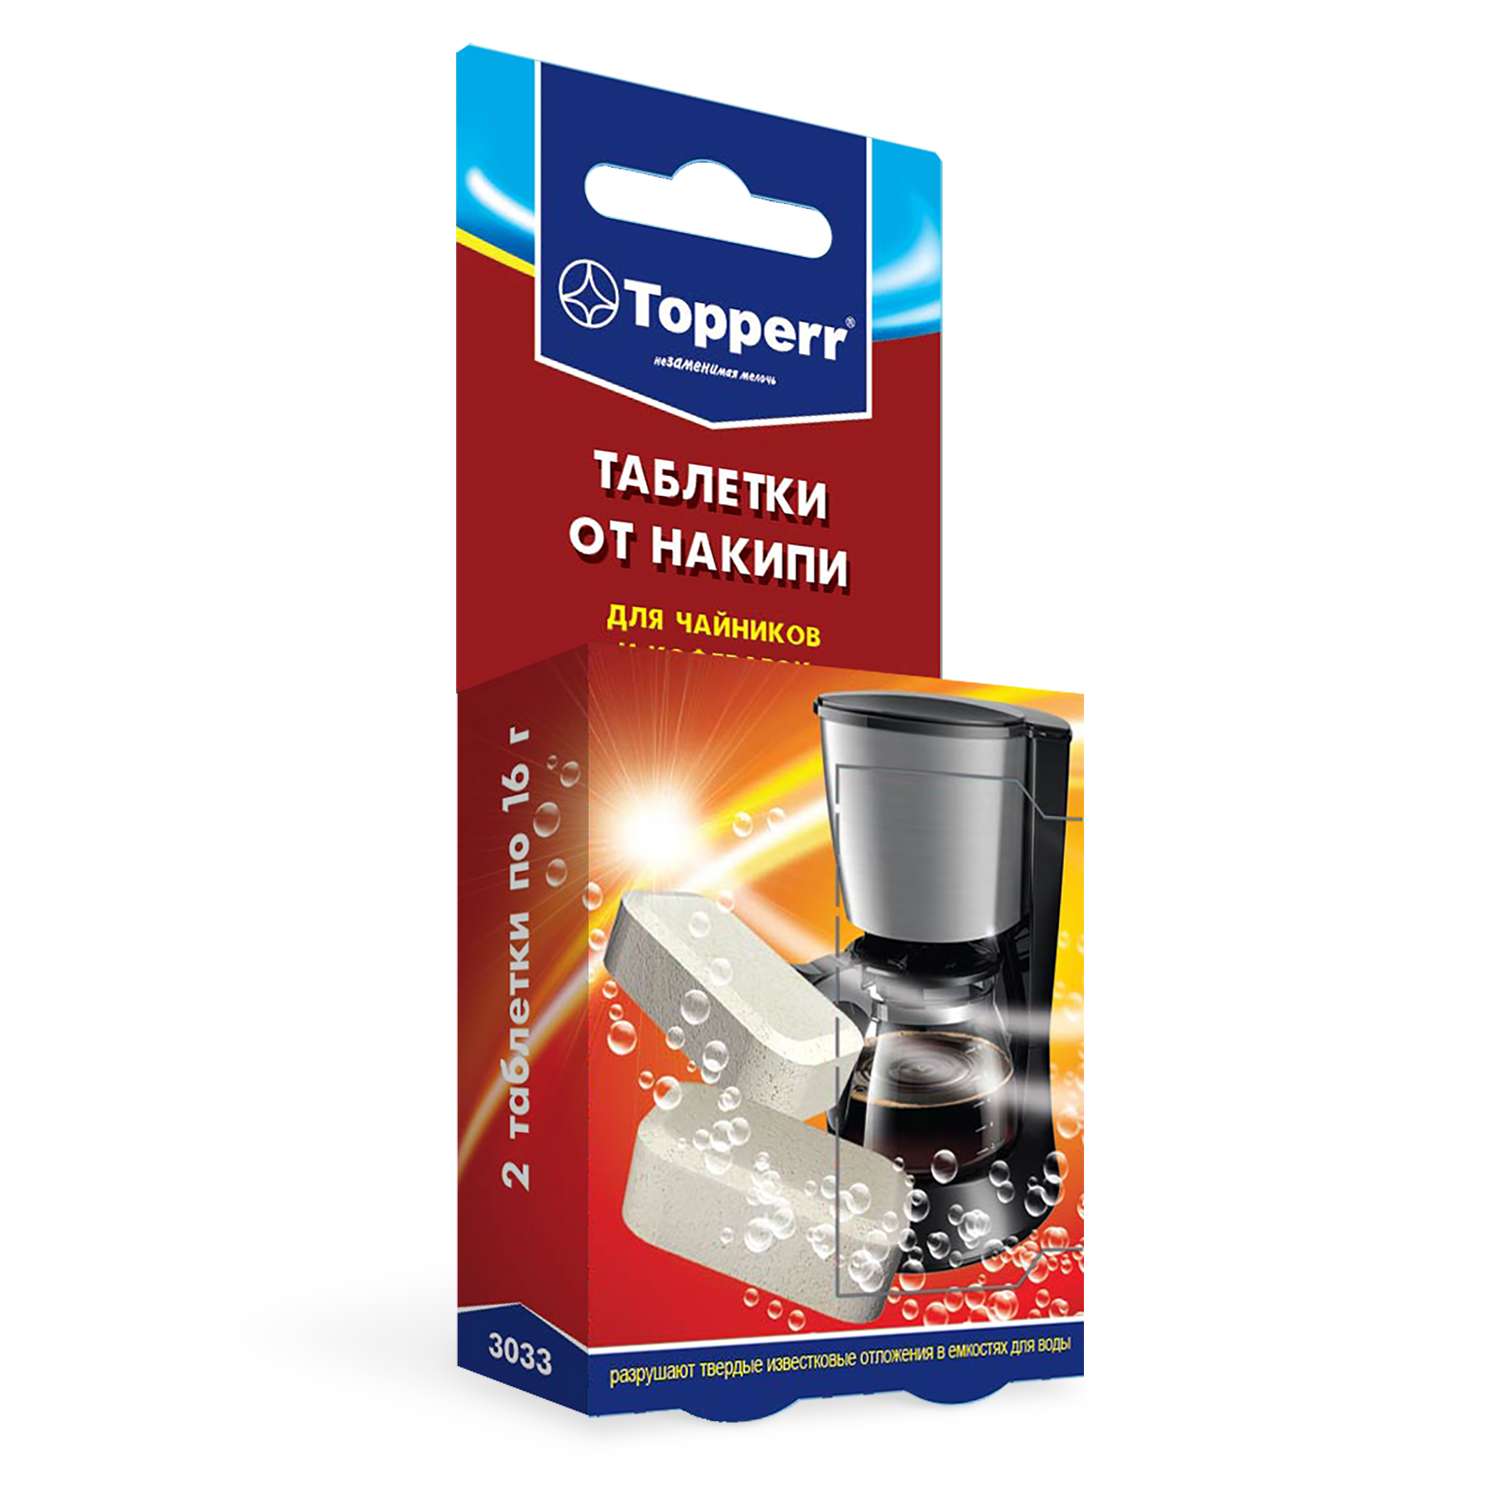 Таблетки TOPPERR от накипи для чайников и кофеварок 2шт 3033 - фото 1